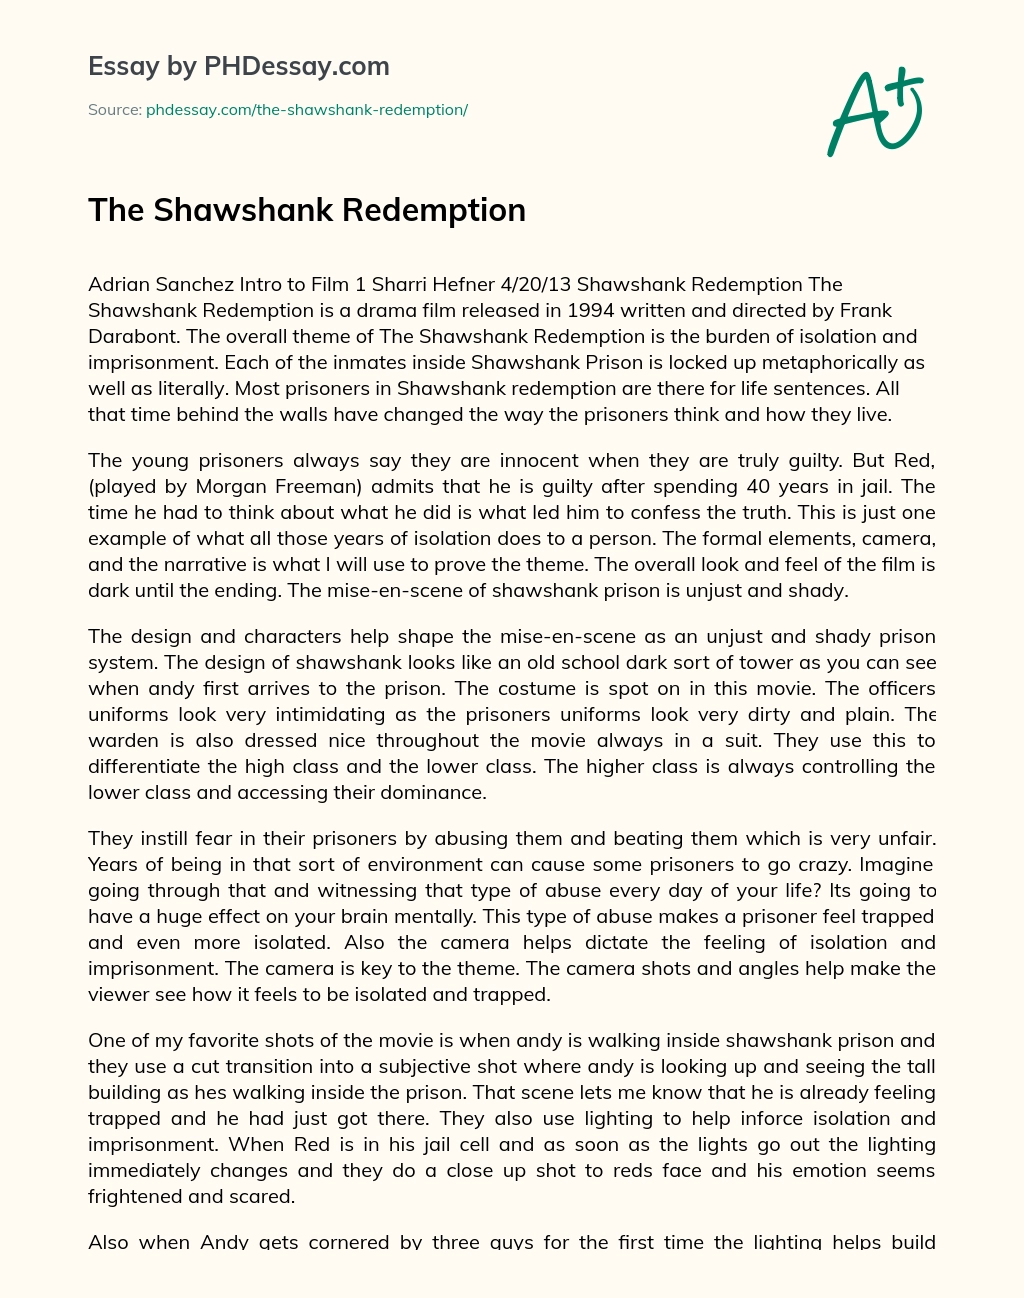 shawshank redemption essay titles